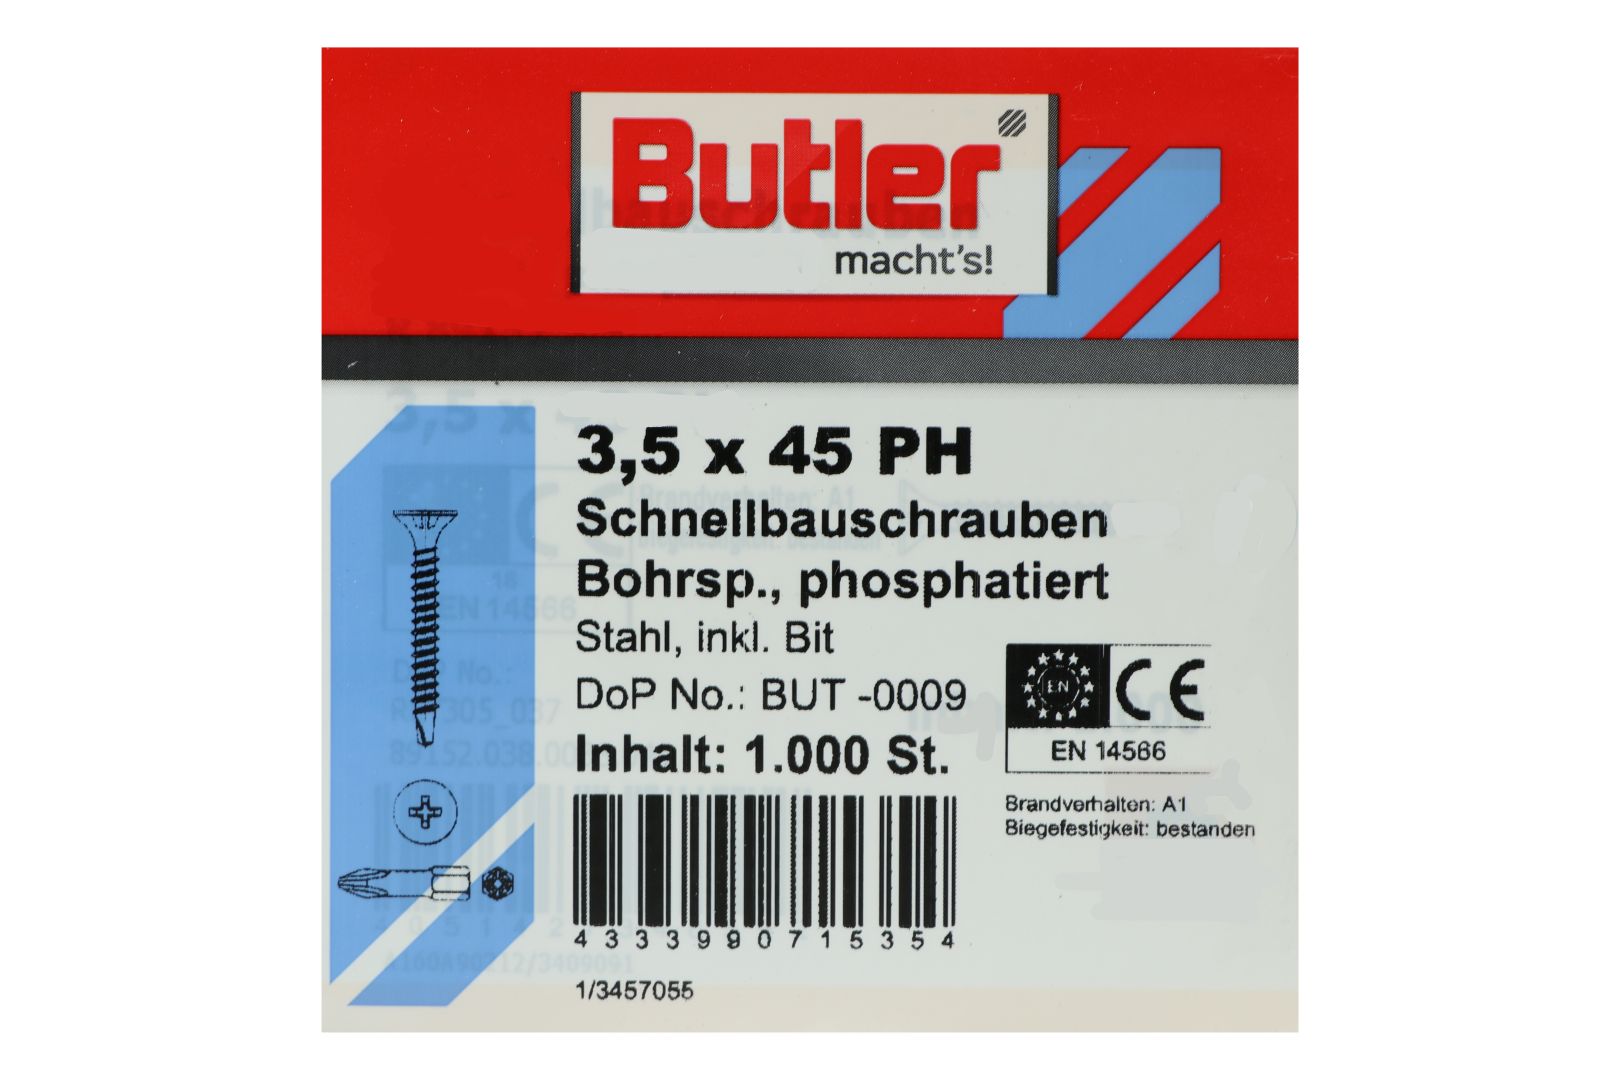 Butler macht's! Schnellbauschrauben inkl. Bit für Gipsplatten auf Metall 0,6 bis 2 mm, Bohrspitze, Feingewinde, PH2, 3,5 x 45 mm, 1.000 Stück